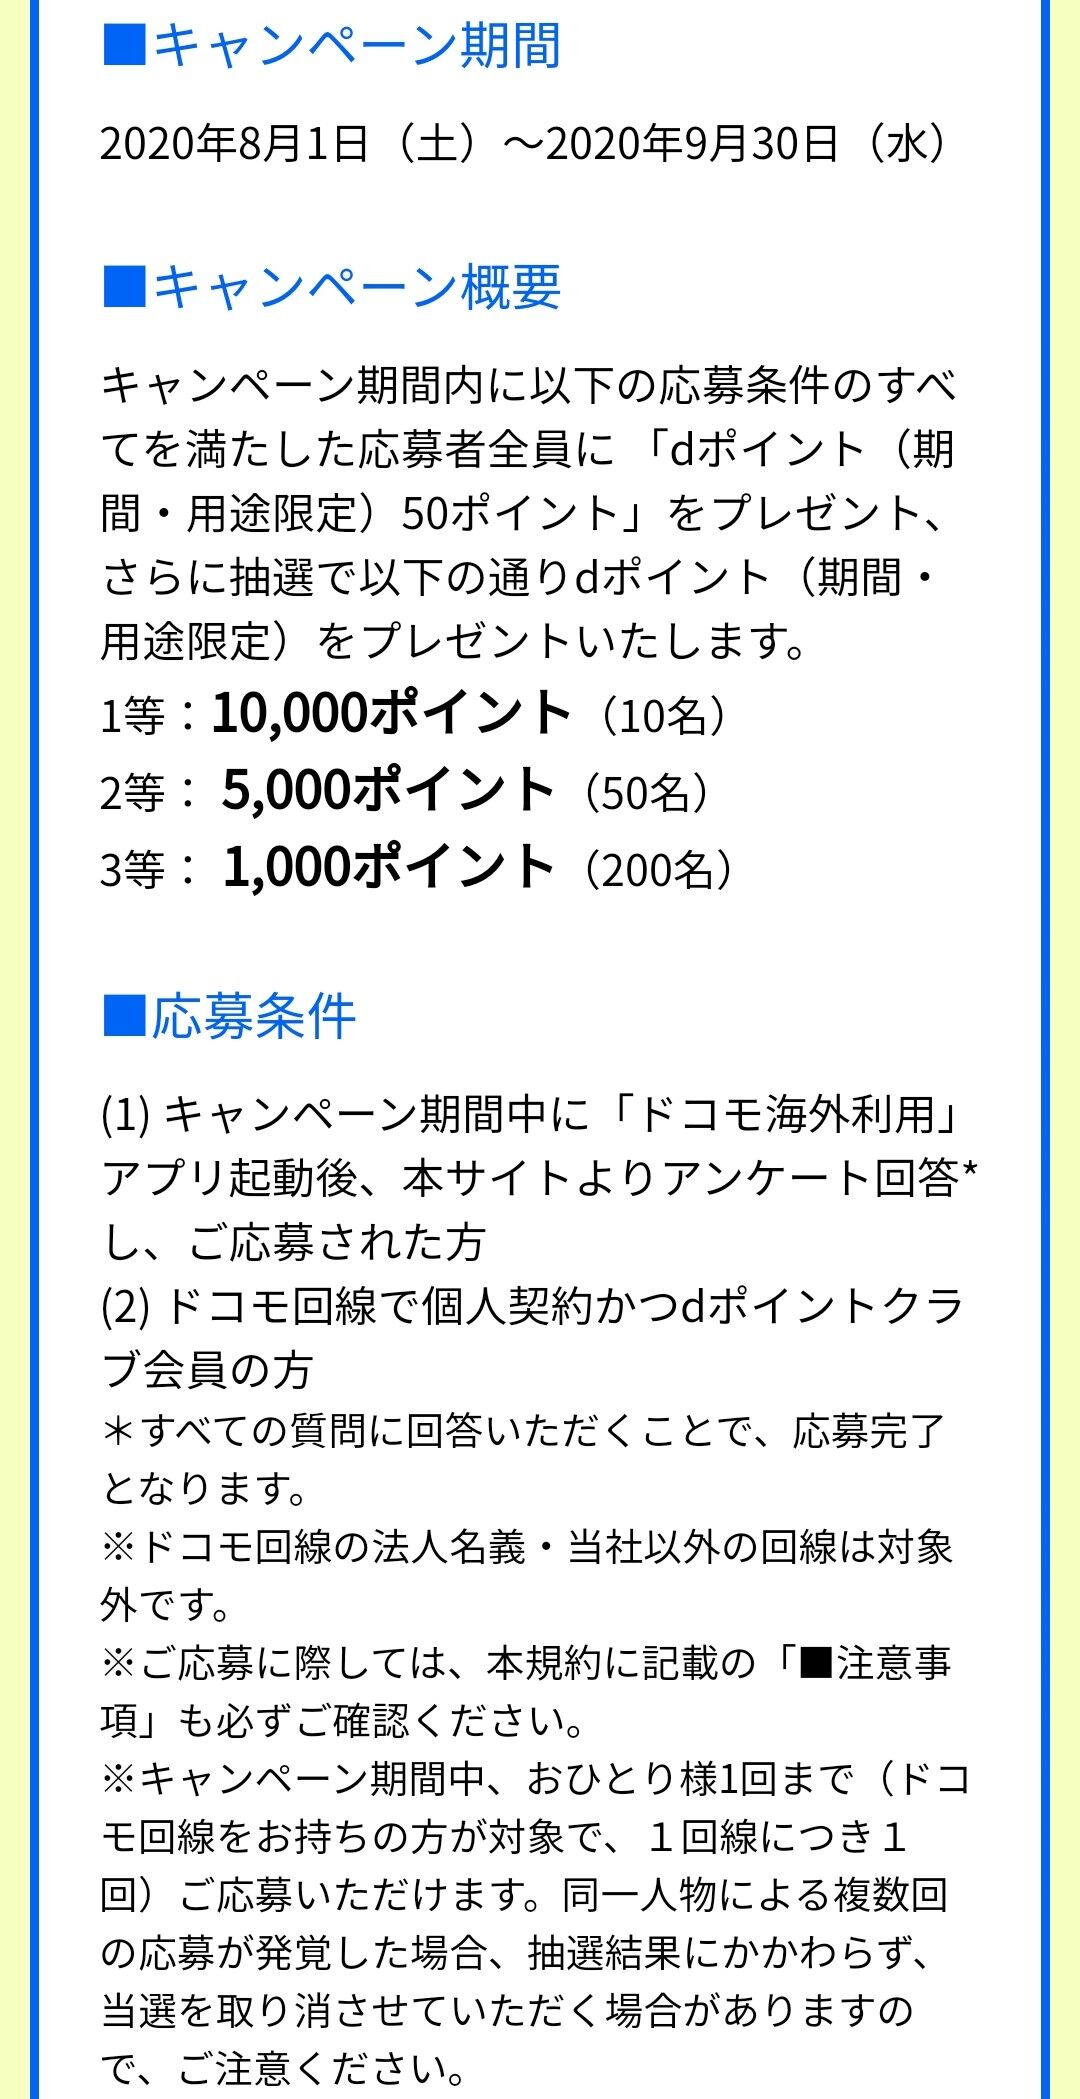 アプリ ドコモ海外利用 アンケート回答で最大10 000ptプレゼント Keitaikid